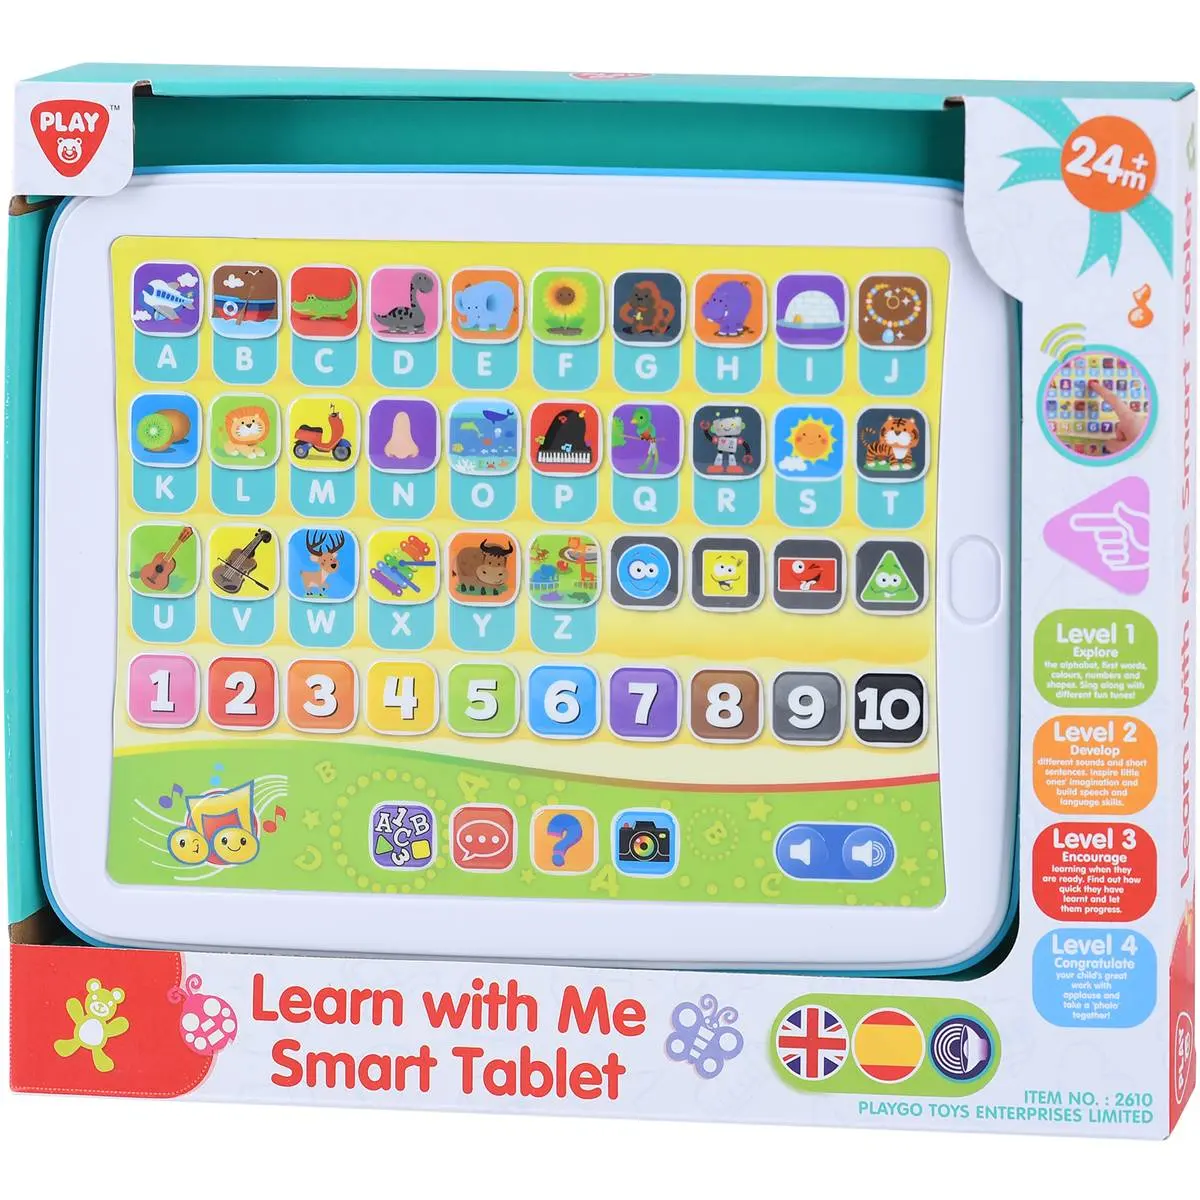 Toque educacional aprendizagem pad com flash cards eletrônico touch screen interativo pré-escolar brinquedo educativo aprendizagem